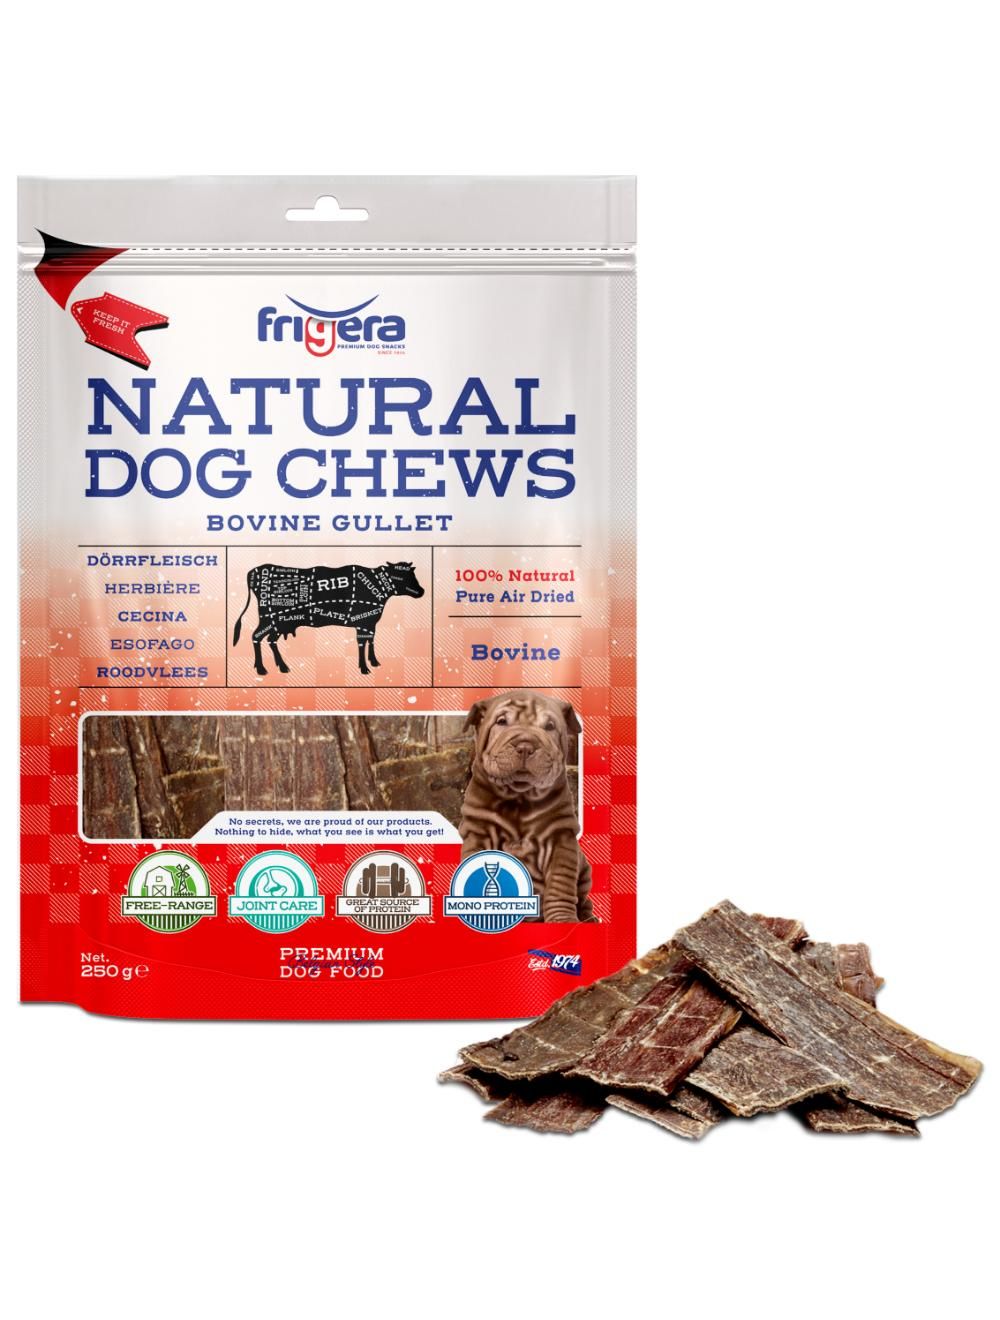 Frigera - Natural Dog Chews Bovine gullet 250 g - (402285851796) - Kjæledyr og utstyr